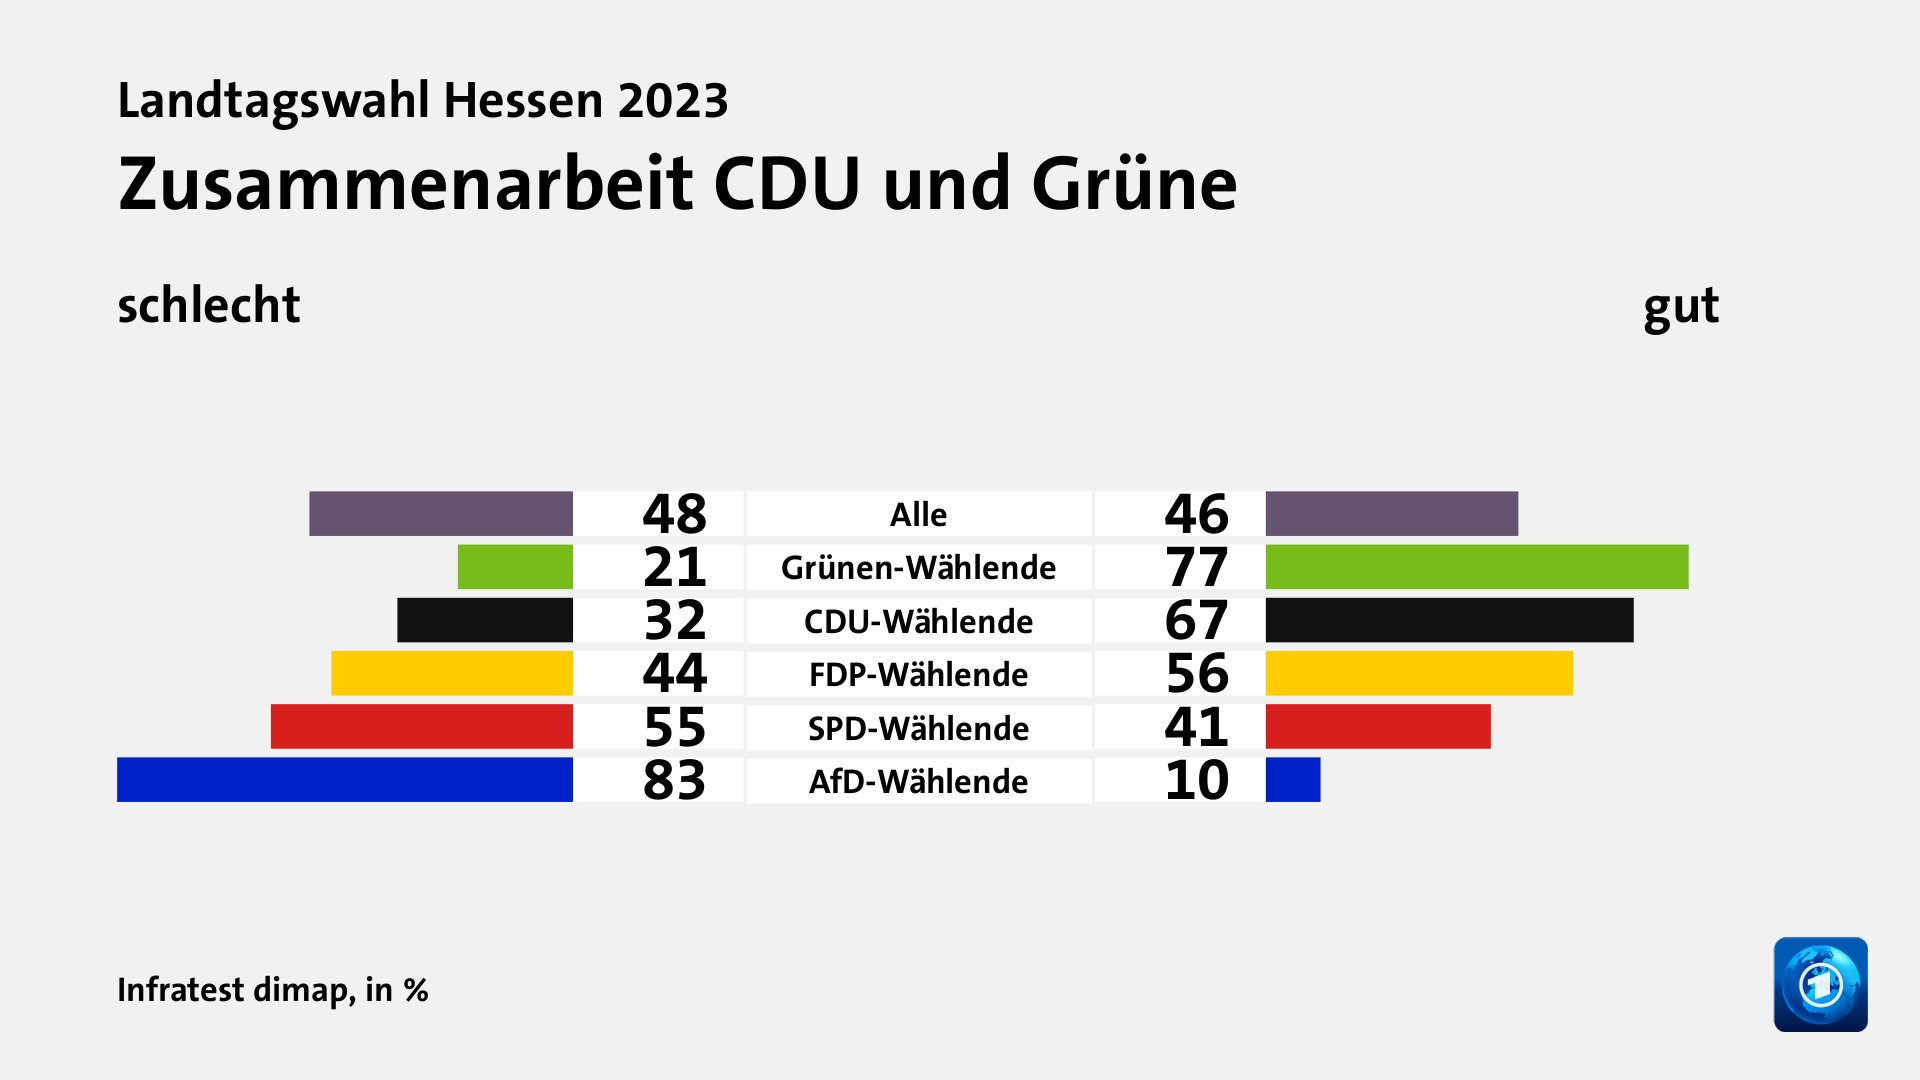 Zusammenarbeit CDU und Grüne (in %) Alle: schlecht 48, gut 46; Grünen-Wählende: schlecht 21, gut 77; CDU-Wählende: schlecht 32, gut 67; FDP-Wählende: schlecht 44, gut 56; SPD-Wählende: schlecht 55, gut 41; AfD-Wählende: schlecht 83, gut 10; Quelle: Infratest dimap